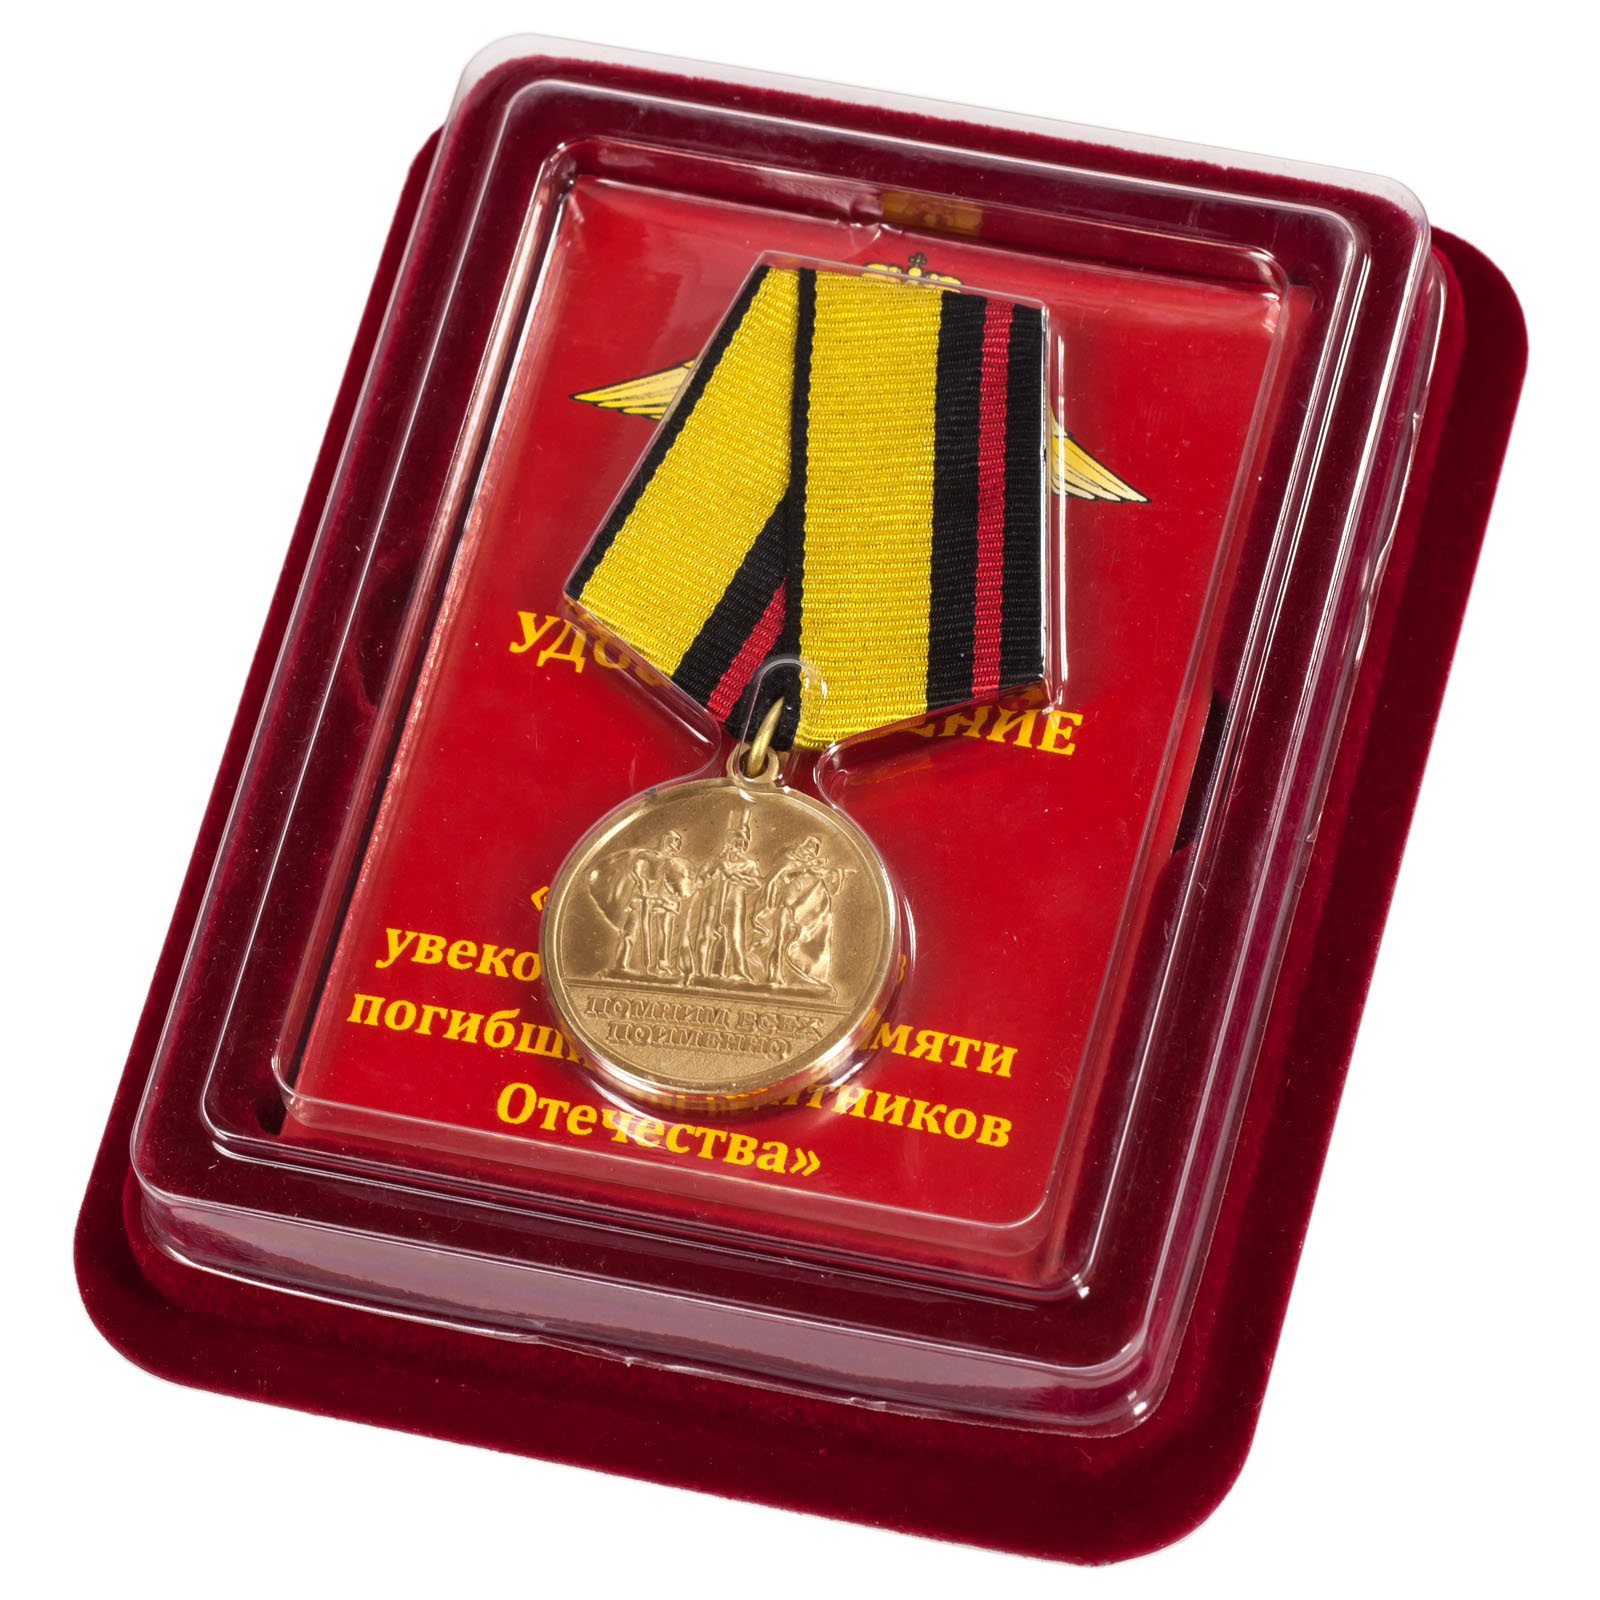 Купить медаль "За заслуги в увековечении памяти погибших защитников Отечества" в наградном футляре